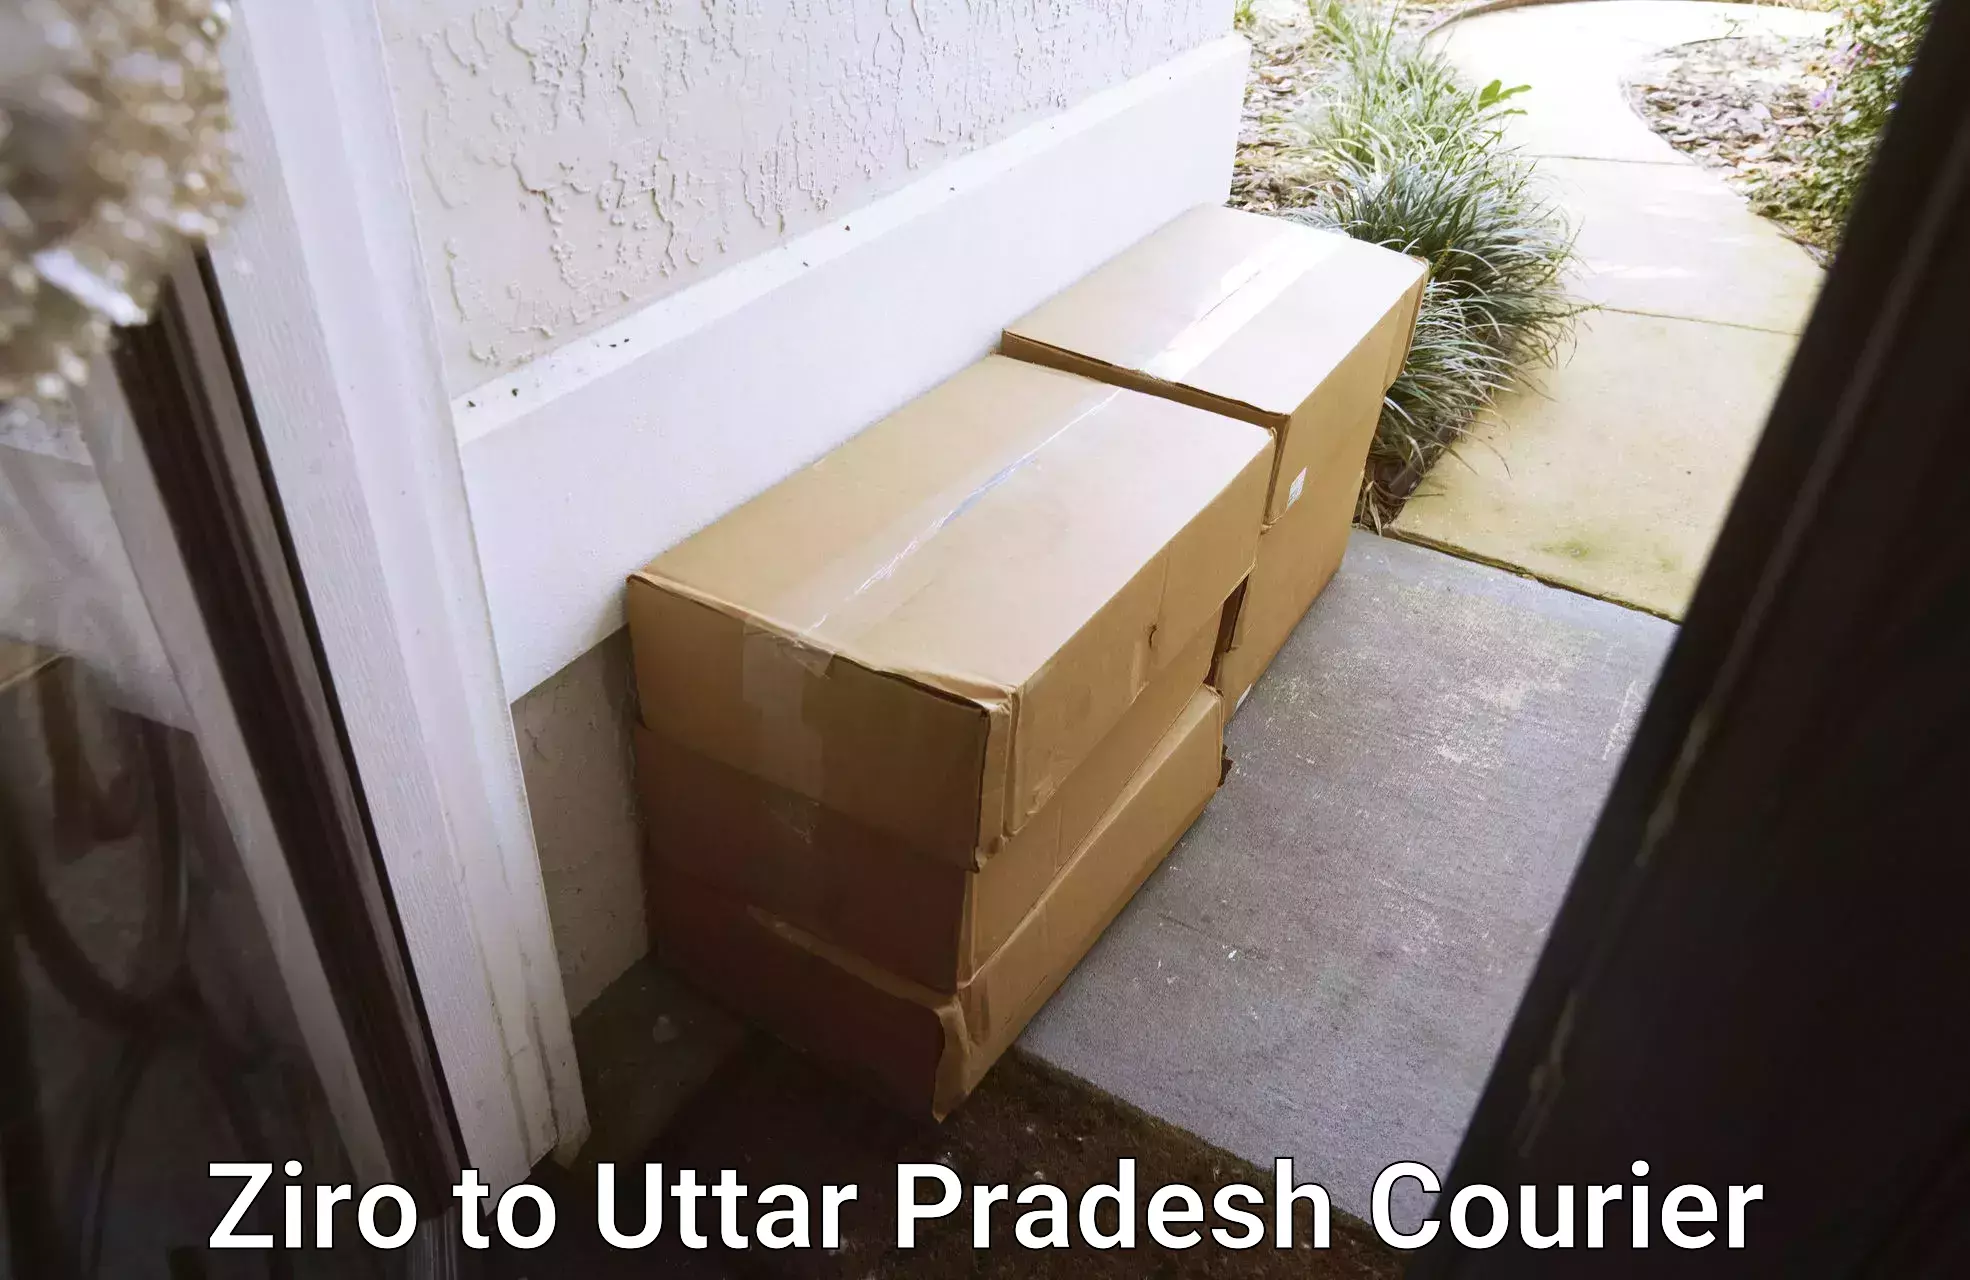 Cost-effective courier options Ziro to Uttar Pradesh